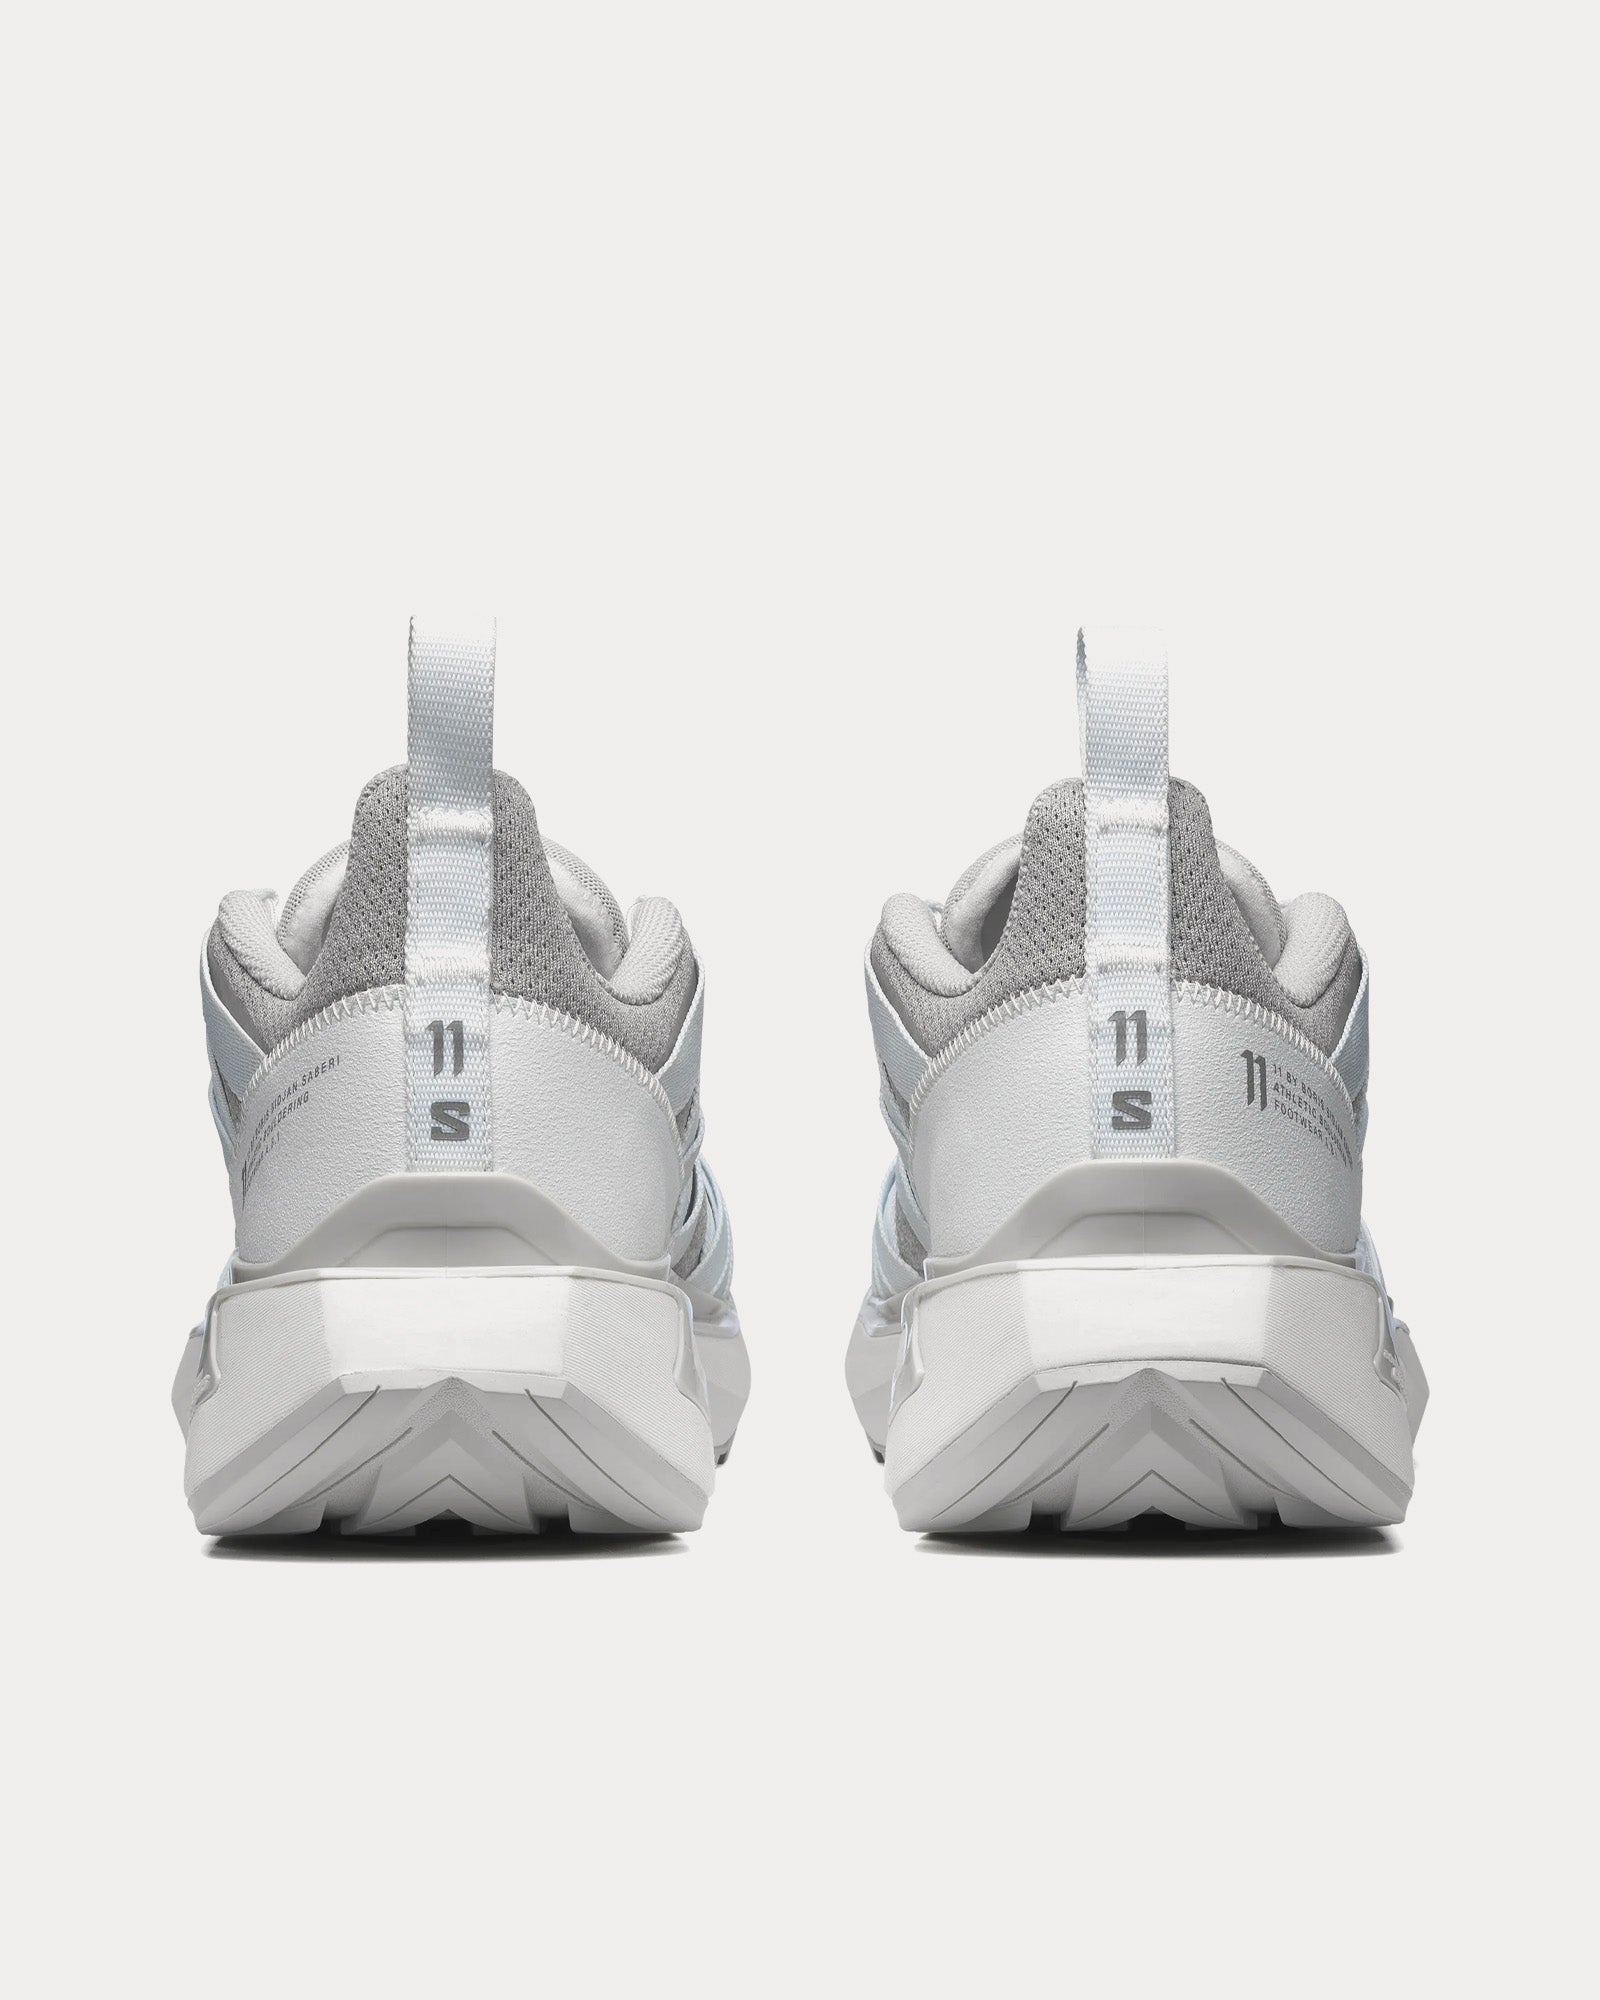 Salomon x 11 By Boris Bidjan Saberi - 11s Footwear A.B.1 White / Lunar Rock / White Low Top Sneakers